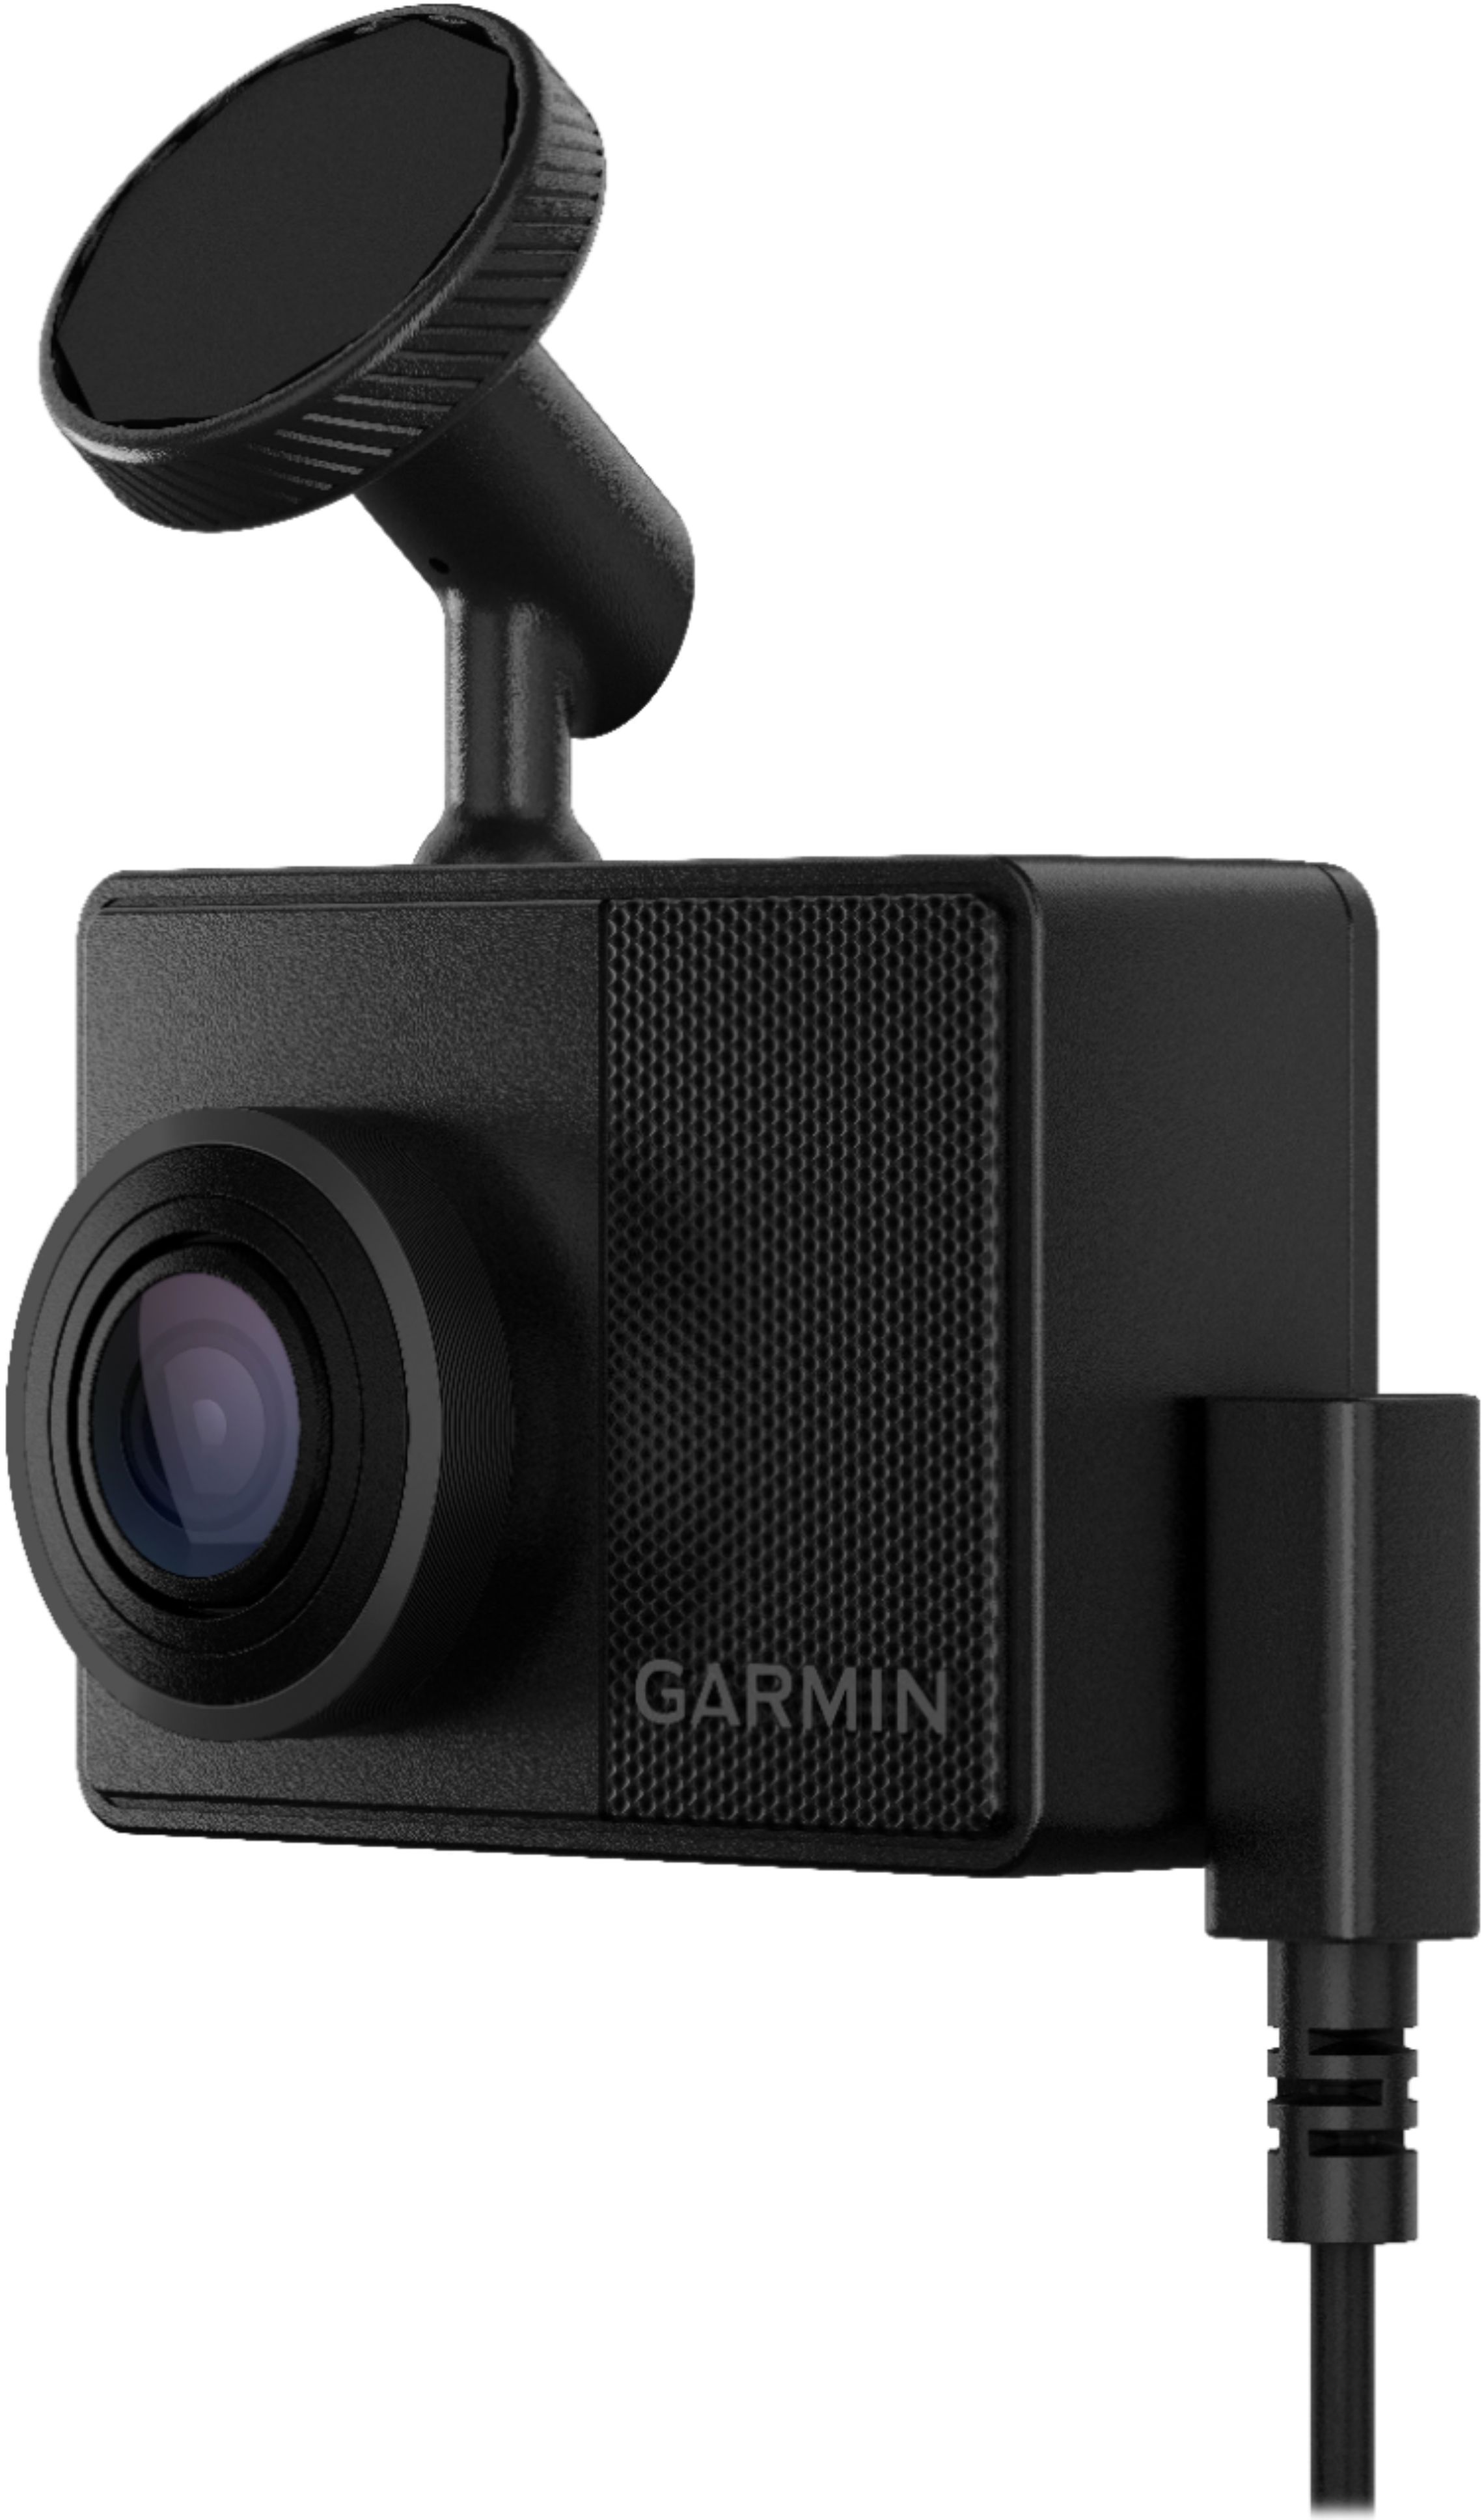 Garmin - Dash Cam 67W - Black